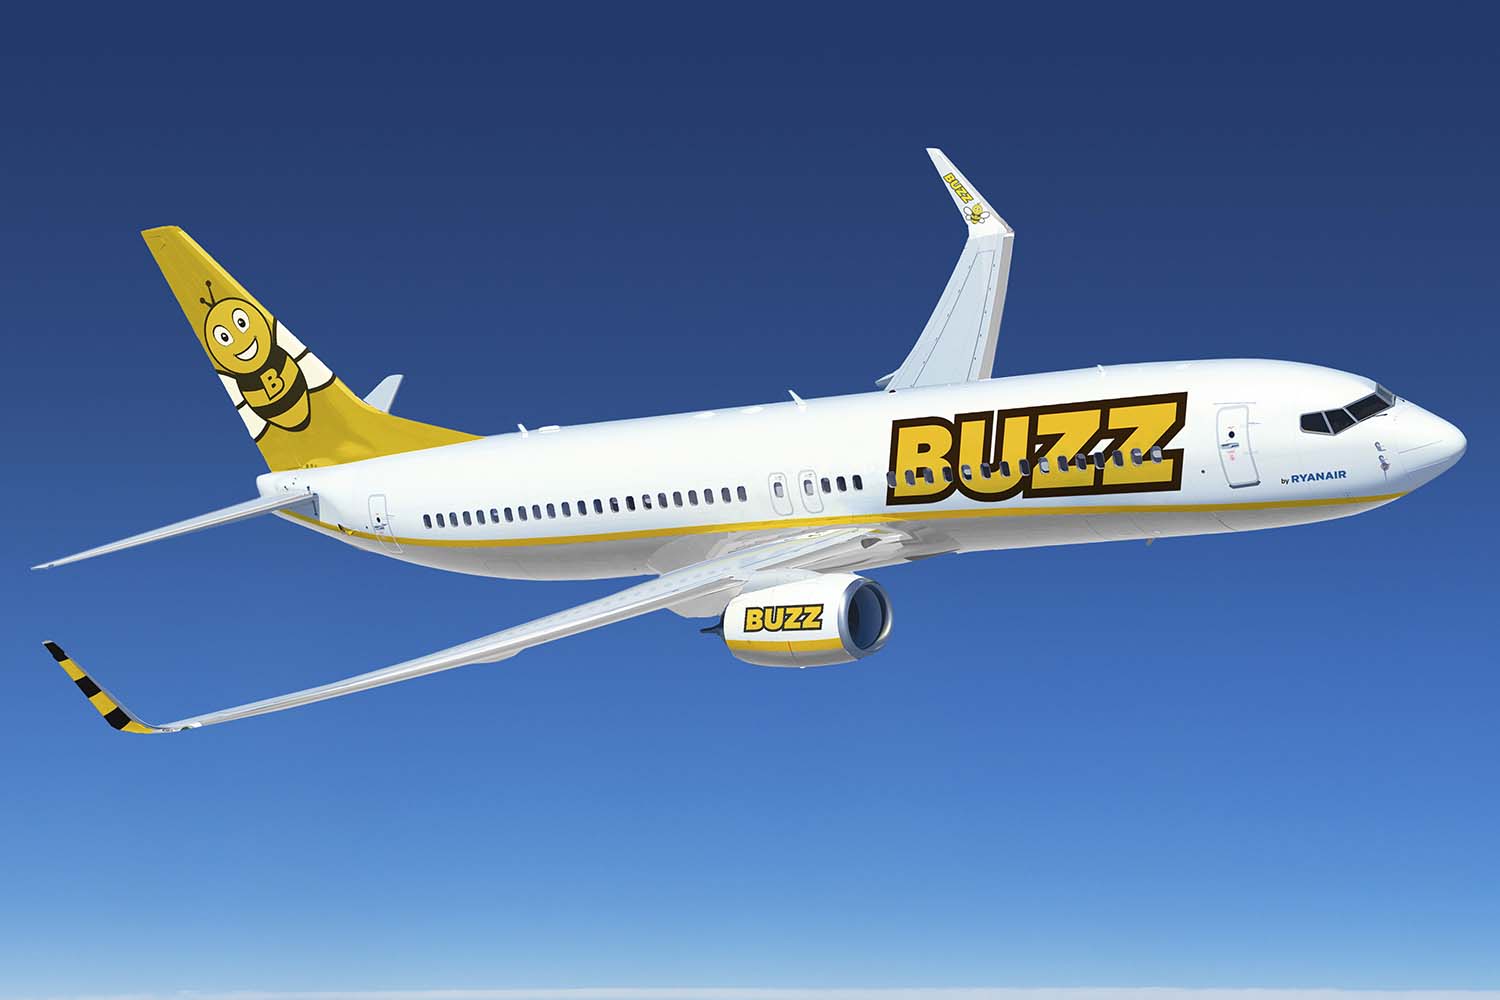 Nace Buzz nueva low-cost filial de Ryanair | Aviación 21